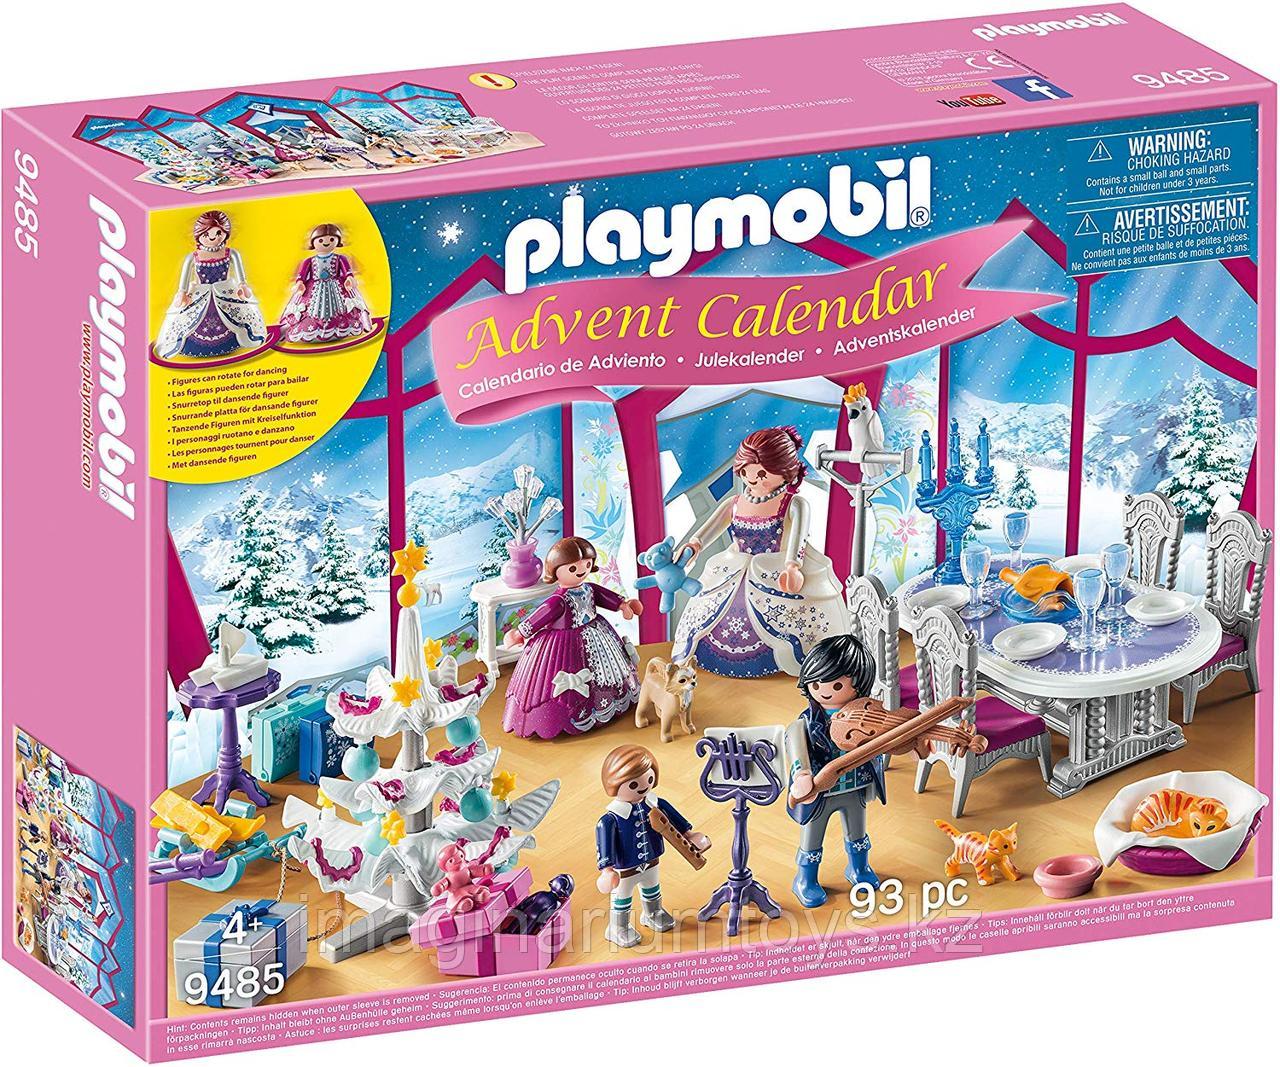 Адвент календарь Playmobil «Рождественский бал» Advent Calendar  9485, фото 1